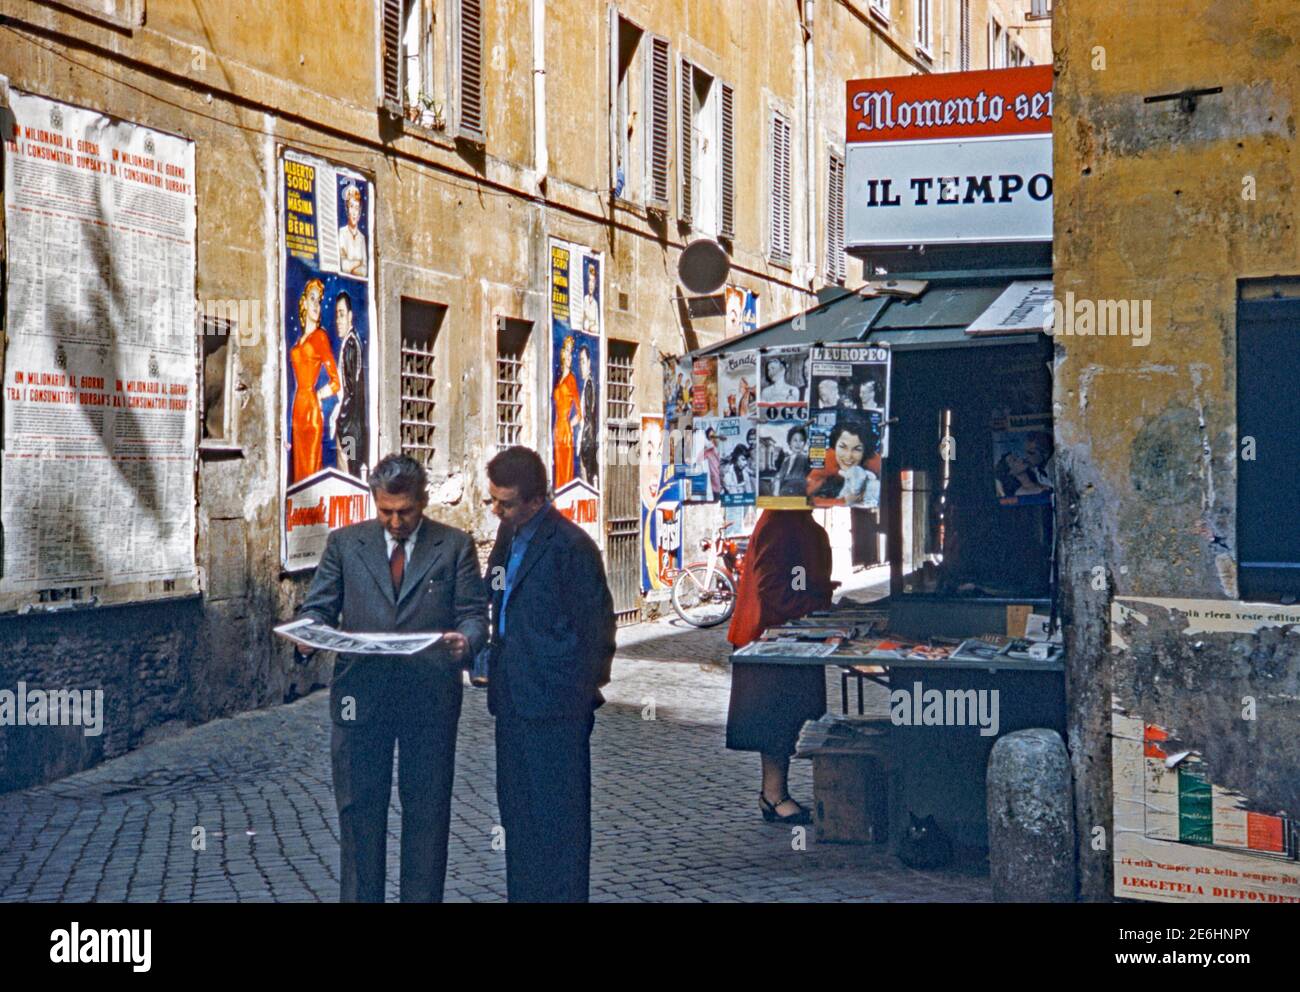 Un kiosque qui vend des magazines et des journaux dans les ruelles de Rome, en Italie, en 1955. Deux hommes parcourent les dernières nouvelles. Le signe au-dessus de la stalle annonce «il Tempo» (signifiant «heure» en anglais), un quotidien local. Les affiches sur le mur en face comprennent une pour le film «Buonanotte... Avvocato ! («Goodnight... Lawyer!»), un film humoristique italien réalisé par Giorgio Bianchi, avec Alberto Sordi, Maria Berni et Giulietta Masina et sorti cette année-là. Banque D'Images